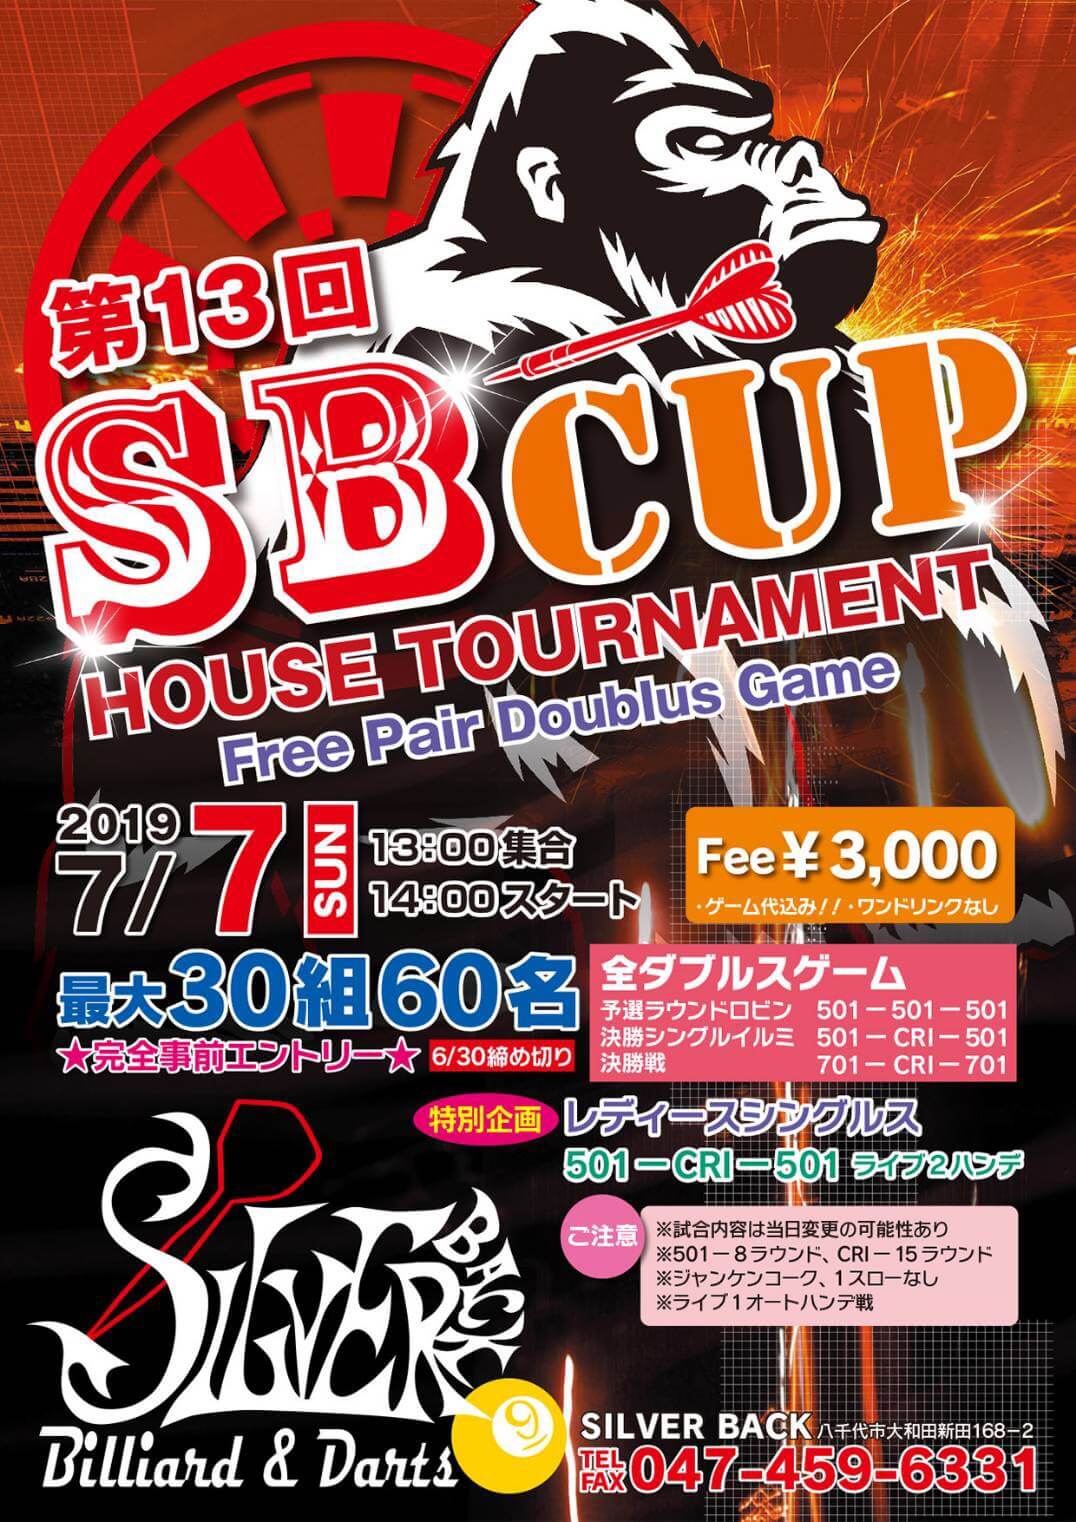 【イベント】SILVER BACK -第13回SBCUP HOUSE TOURNAMENT-【2019.7.7(日)】